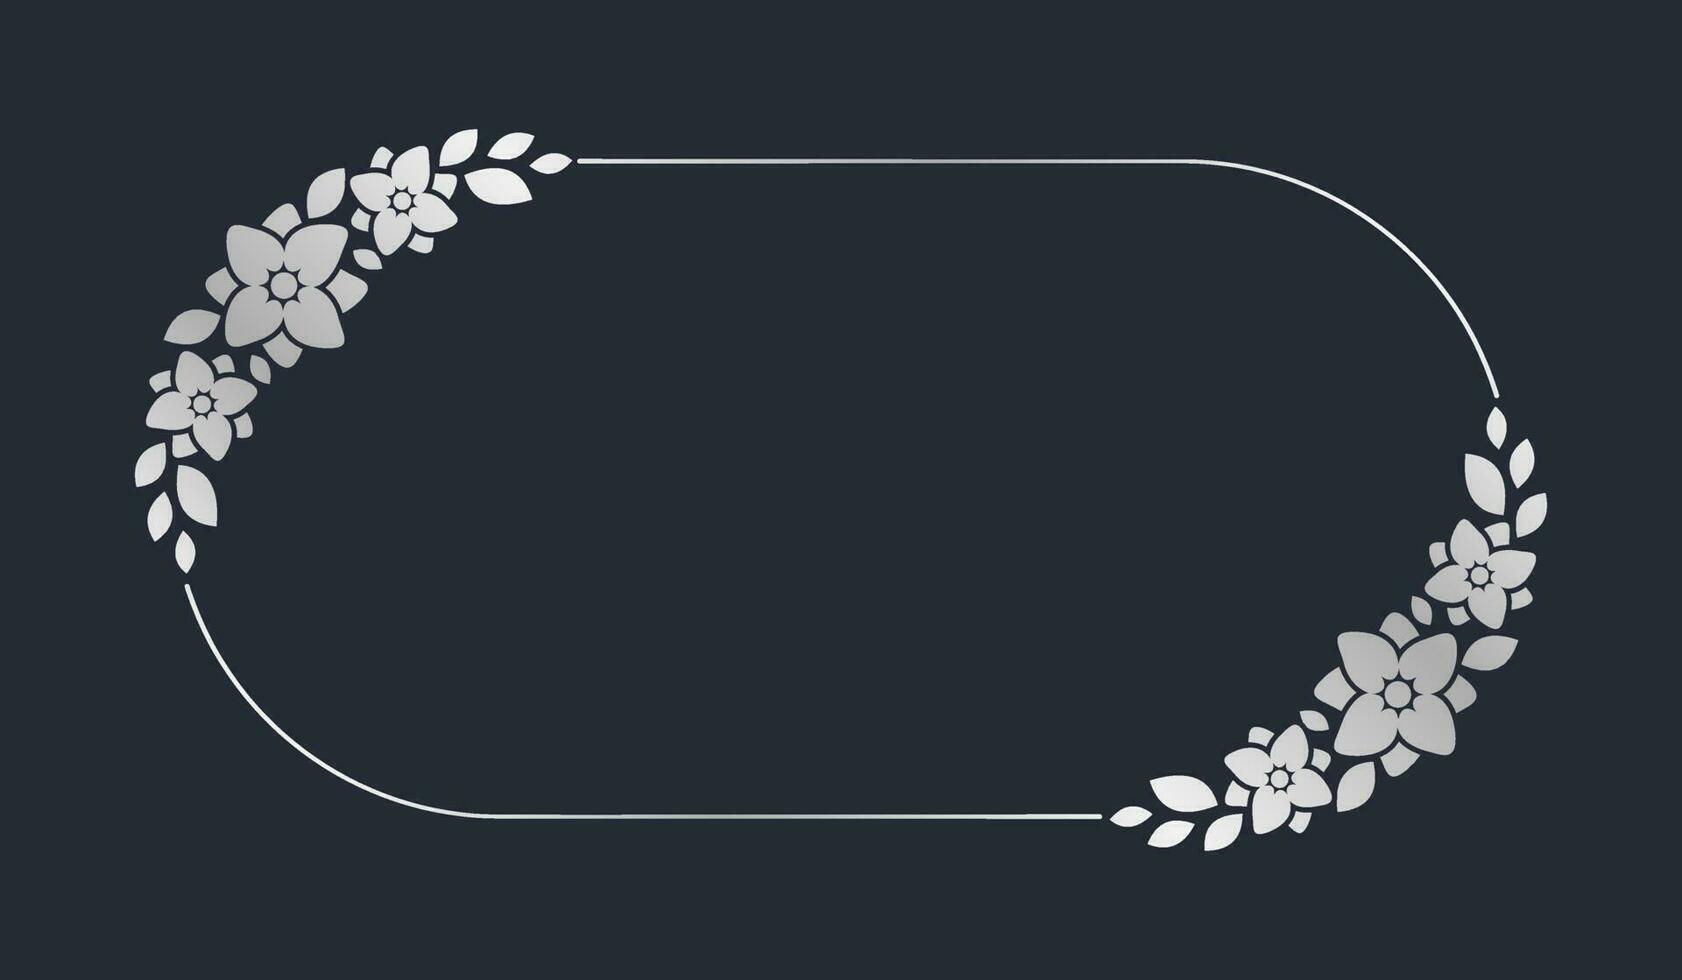 Silber Oval Blumen- Rahmen Vorlage. Luxus golden Rahmen Rand zum einladen, Hochzeit, Zertifikat. Vektor Kunst mit Blumen und Blätter.